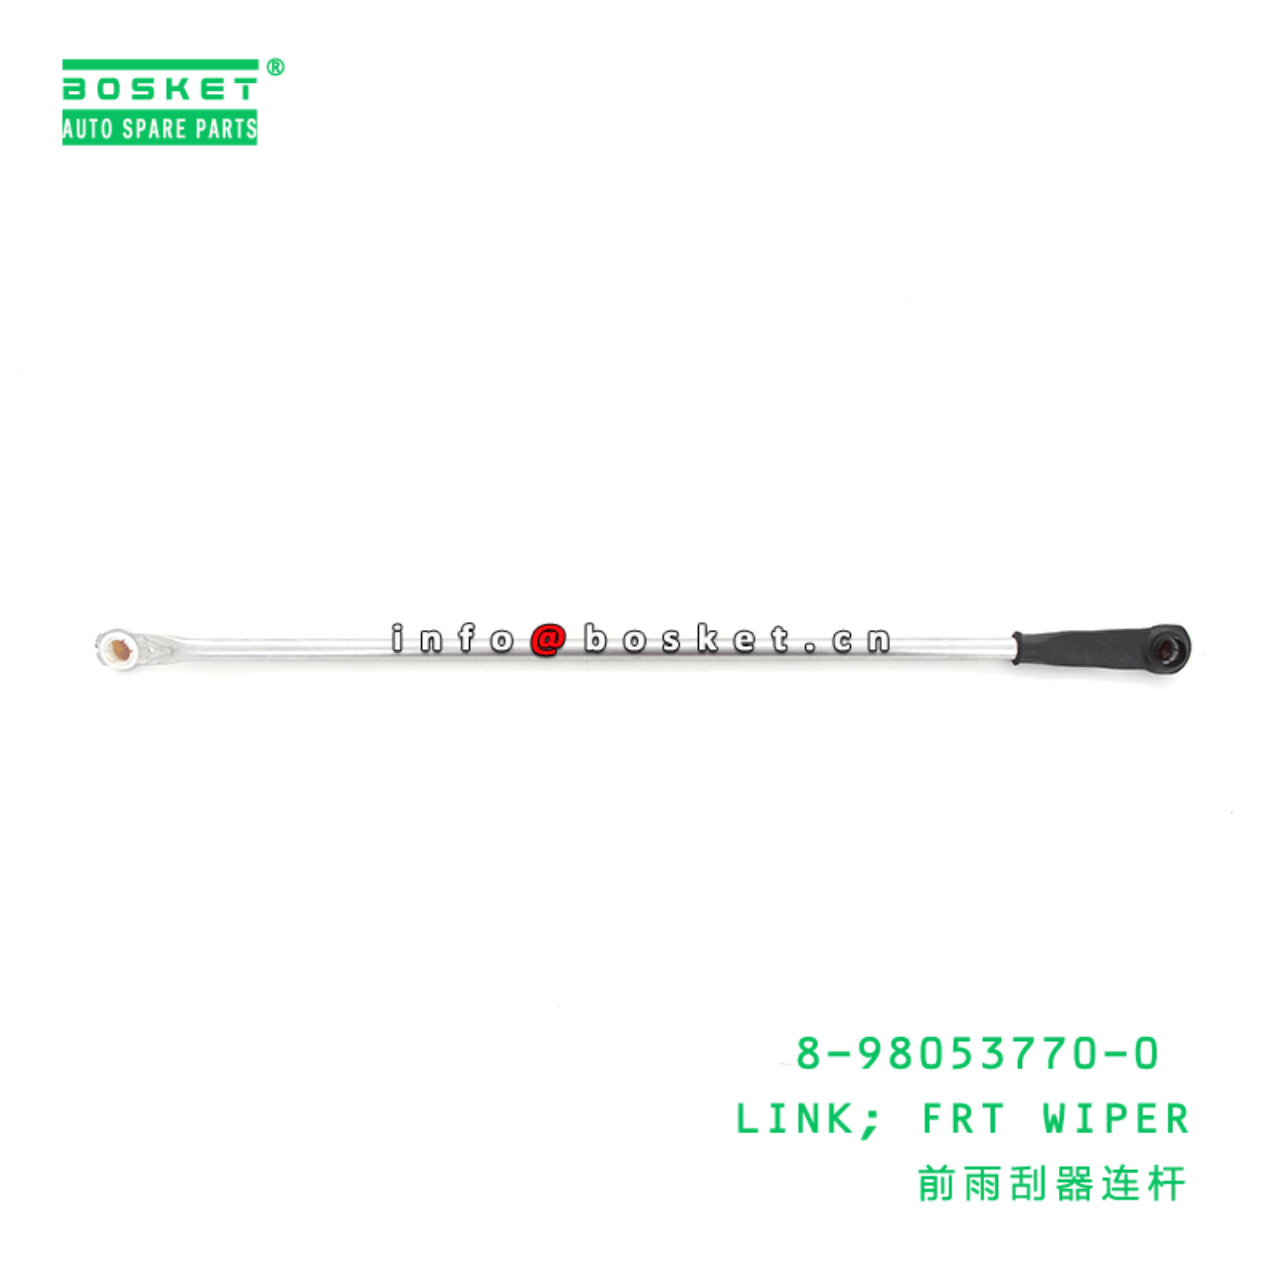 8-98053770-0 8980537700 Front Wiper Link Suitable for ISUZU NMR85